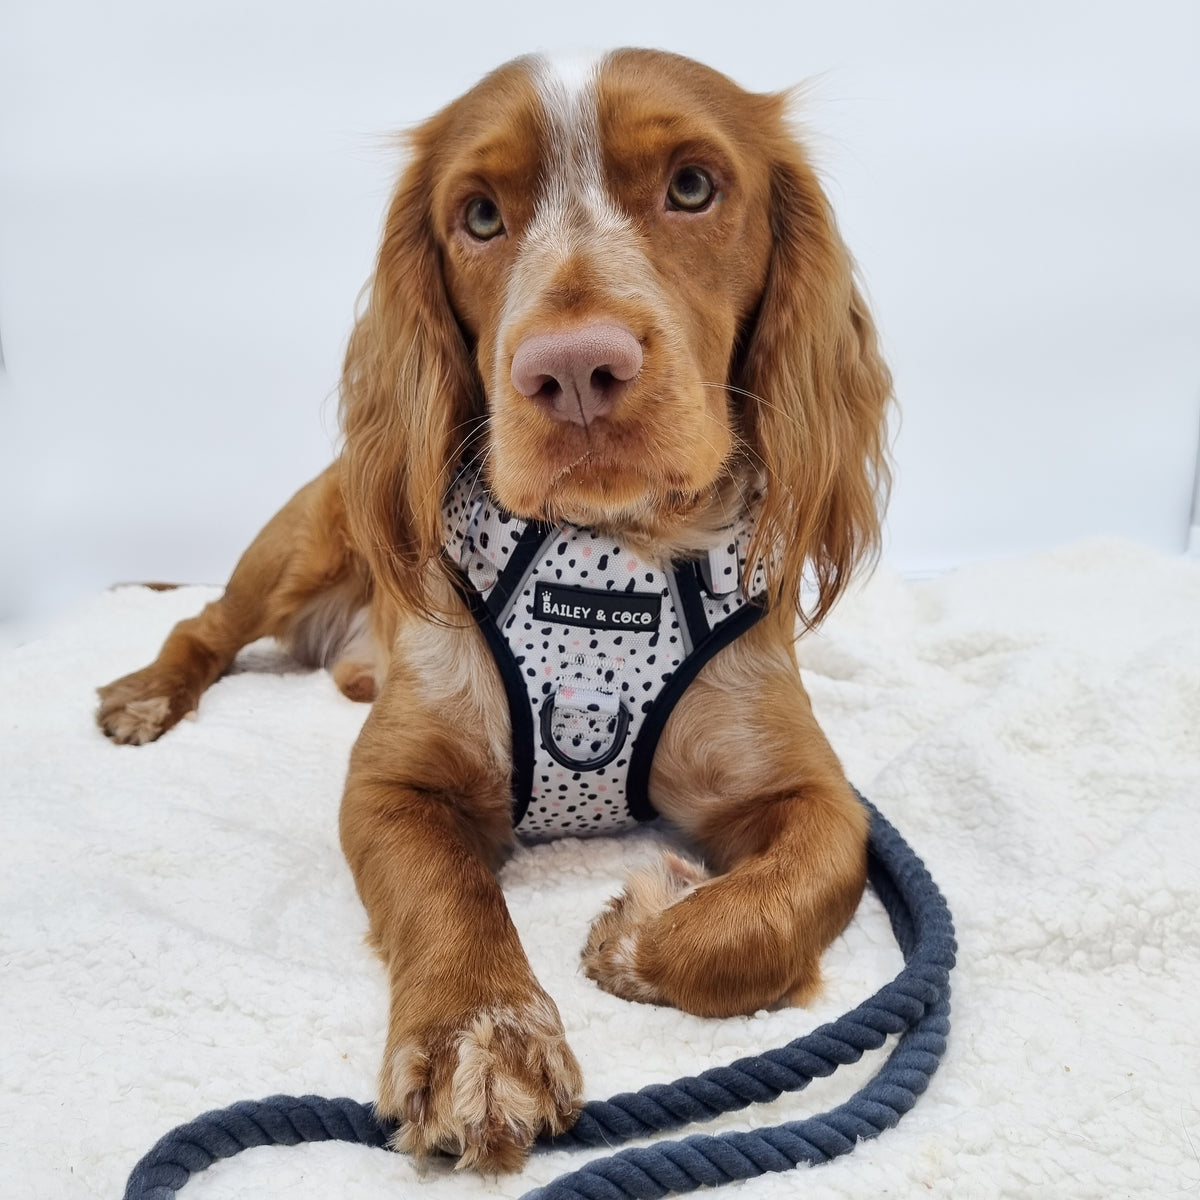 Hunde-Autosicherheitsgurt – Der Schwarze - Bailey and Coco (UK)